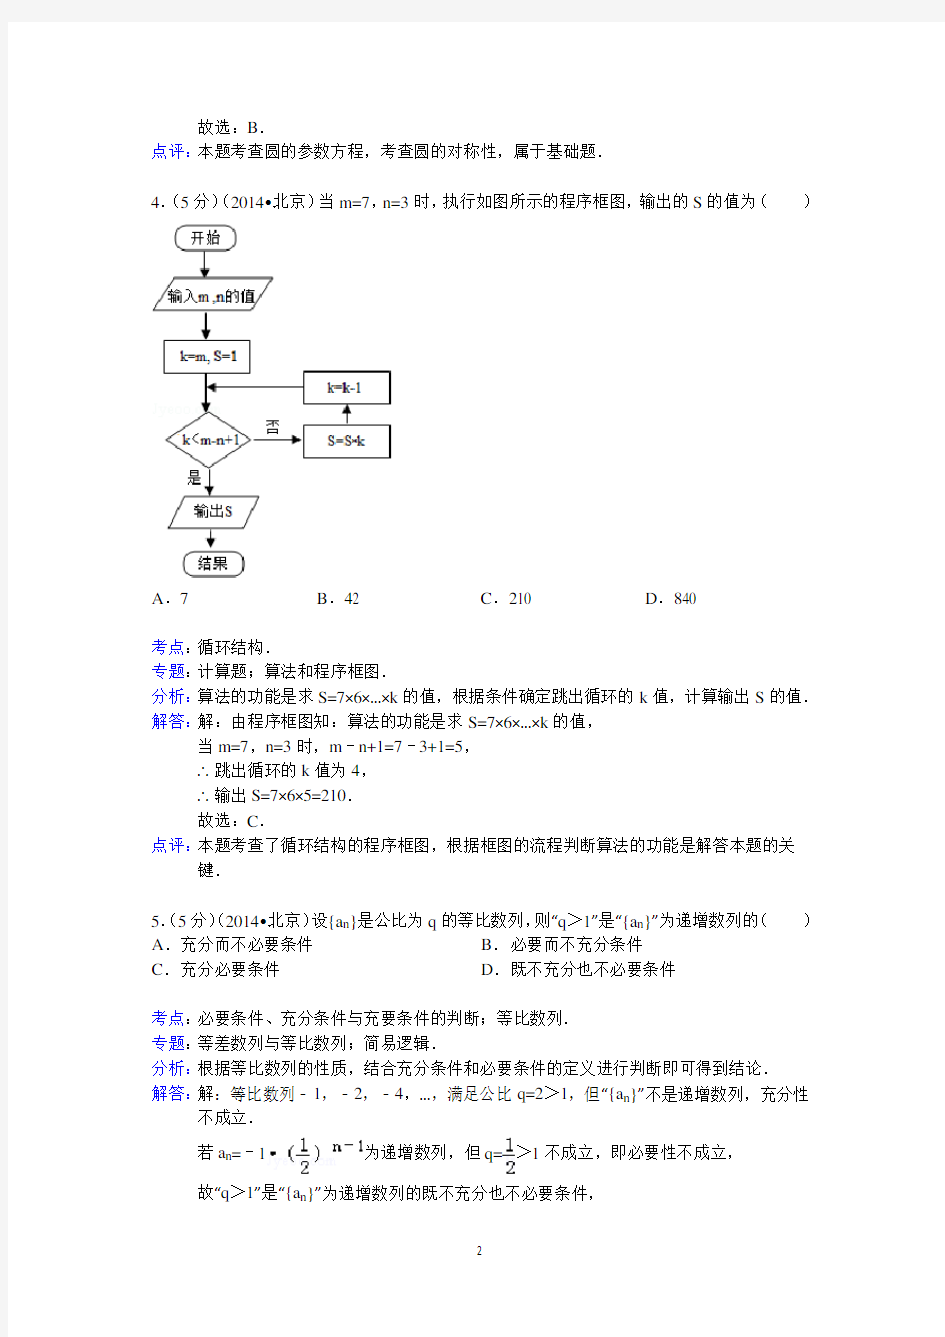 2014年北京市高考数学试卷(理科)答案与解析